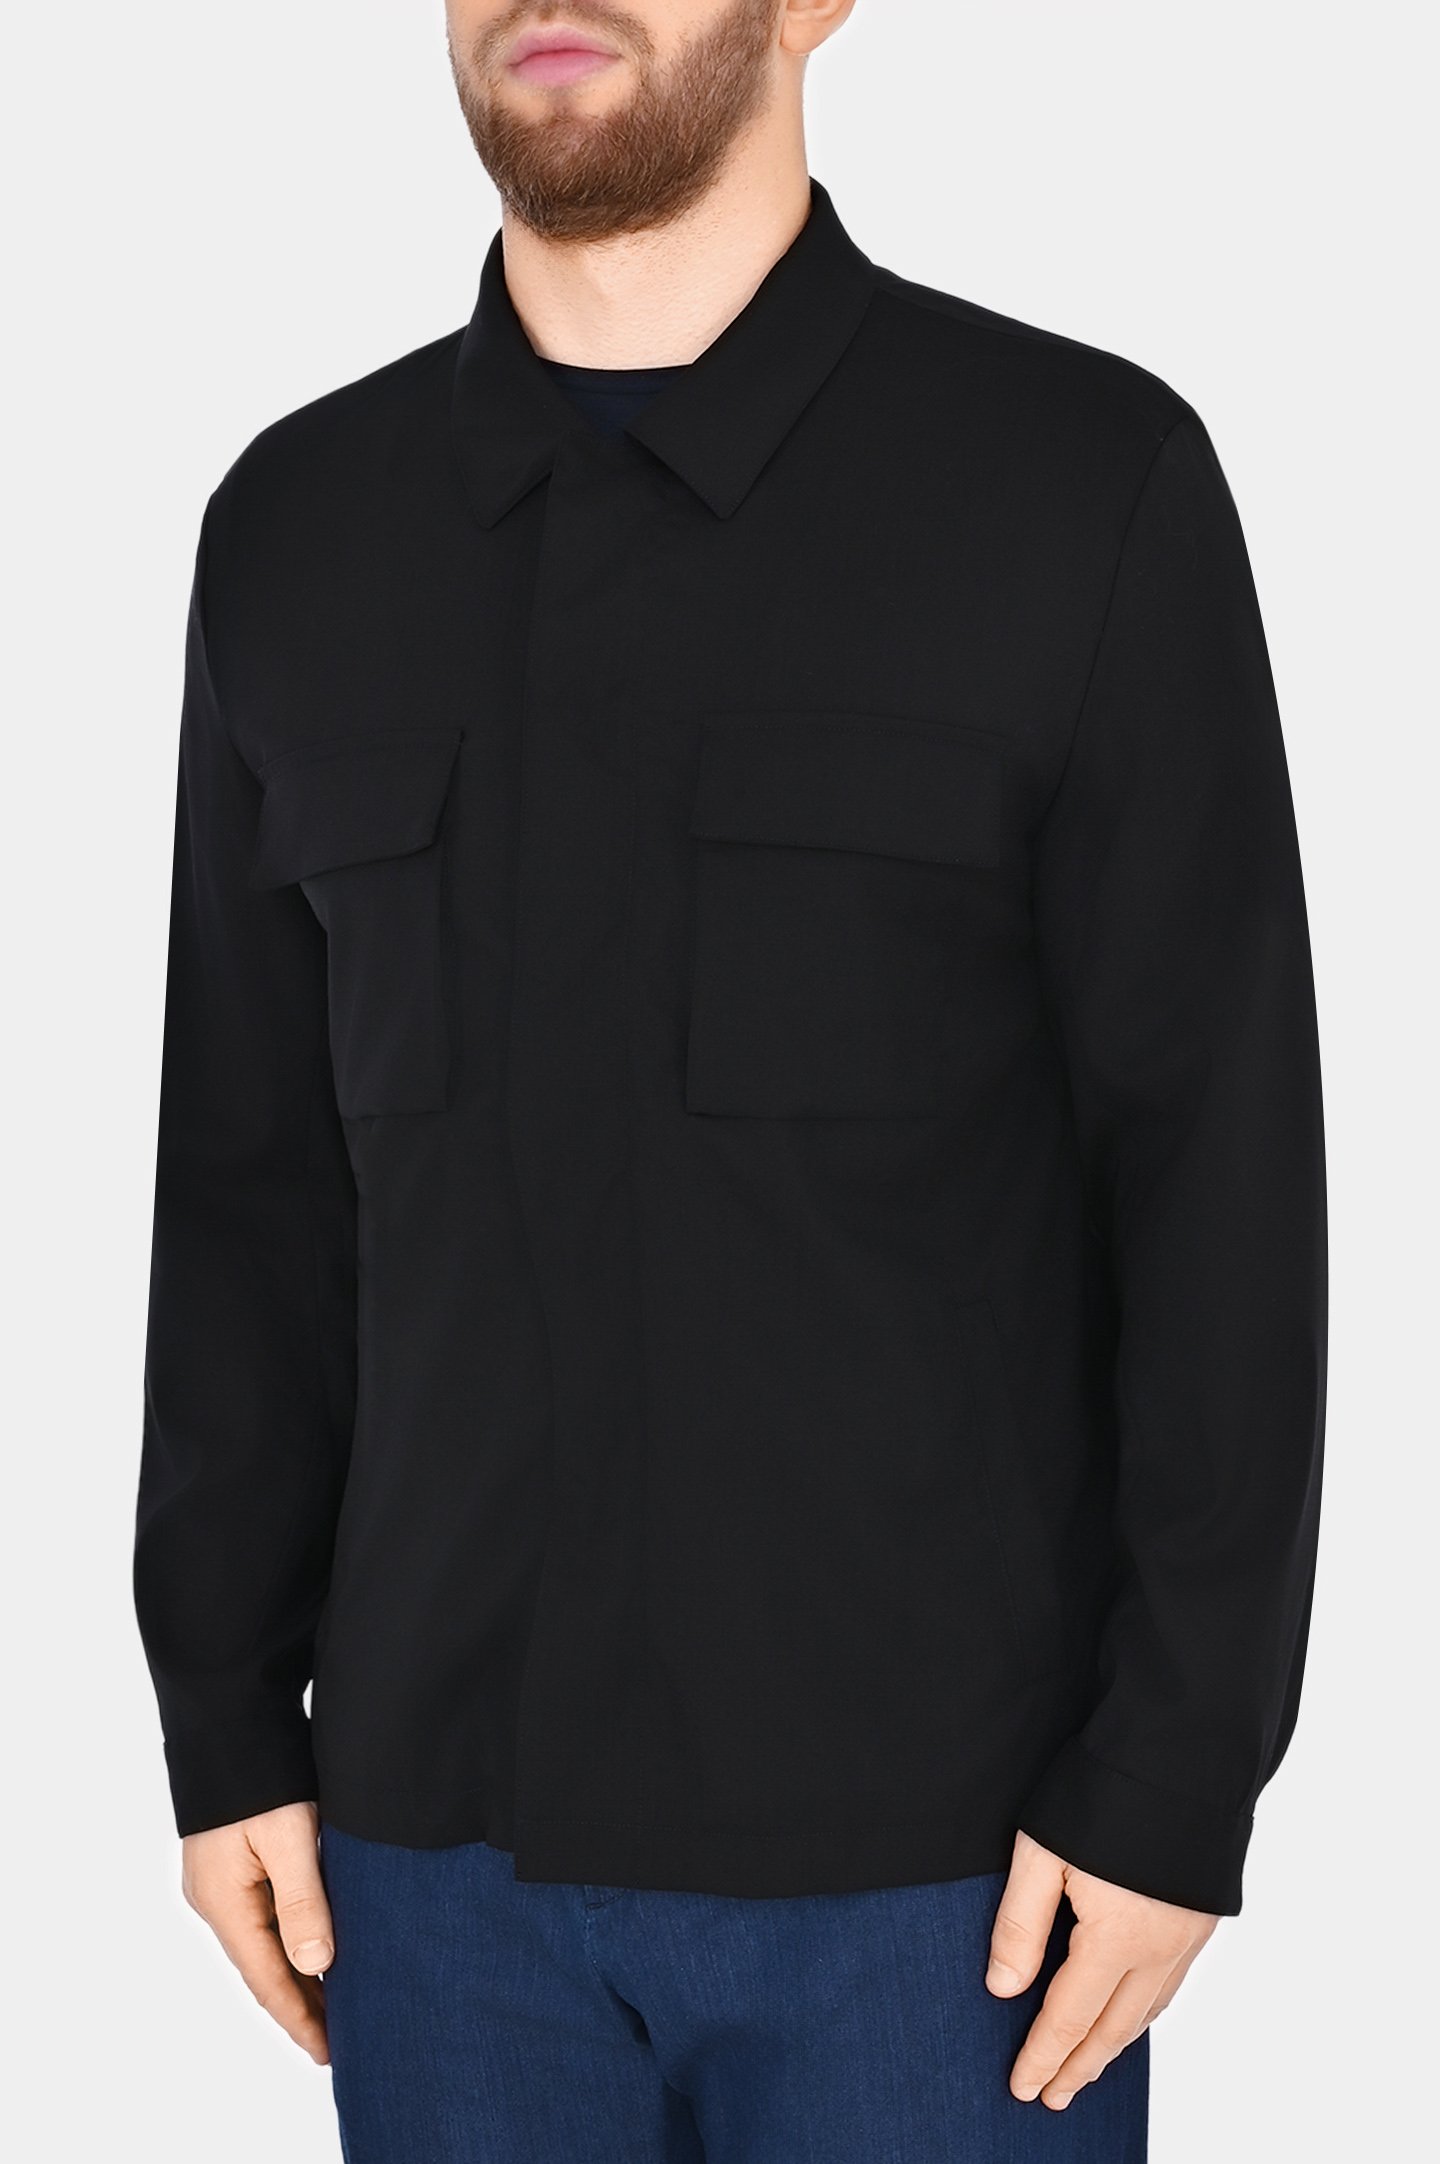 Куртка с карманами  KITON UW1724K0638C0, цвет: Черный, Мужской